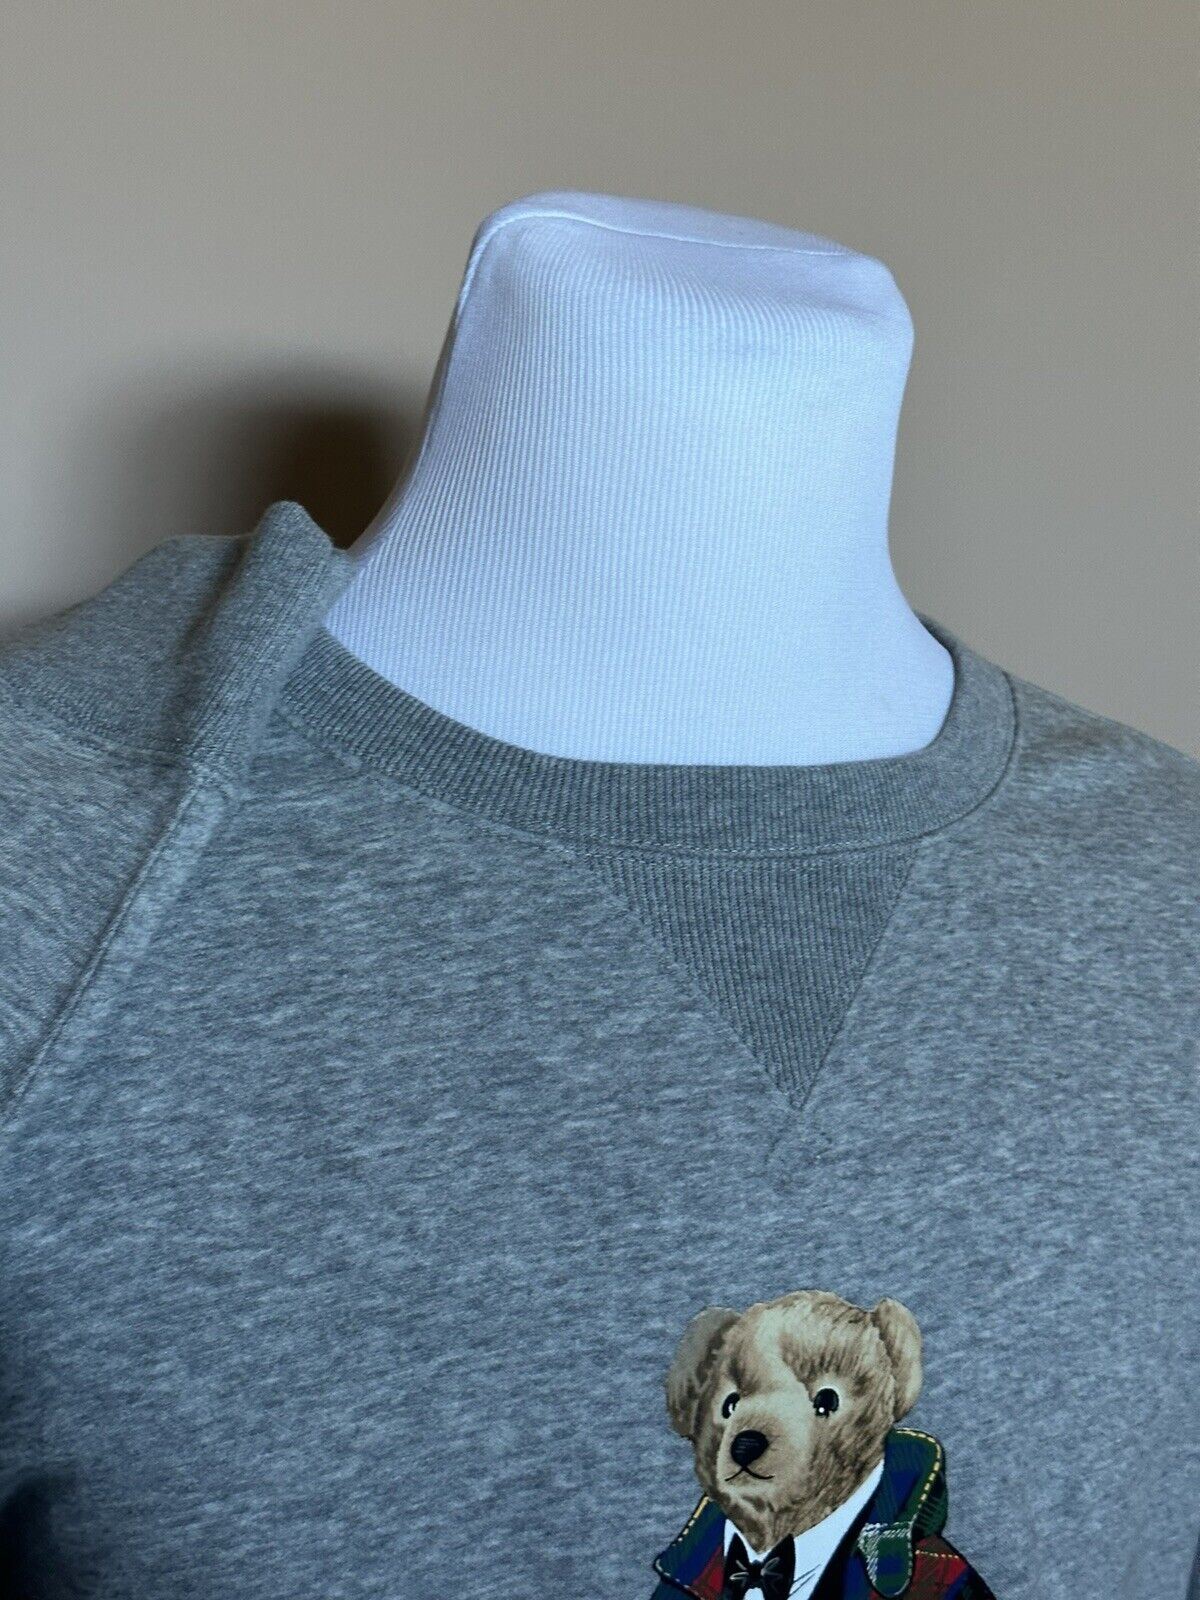 Новый свитшот Polo Ralph Lauren Bear, серый цвет 2XL/2TG, стоимостью 148 долларов. 